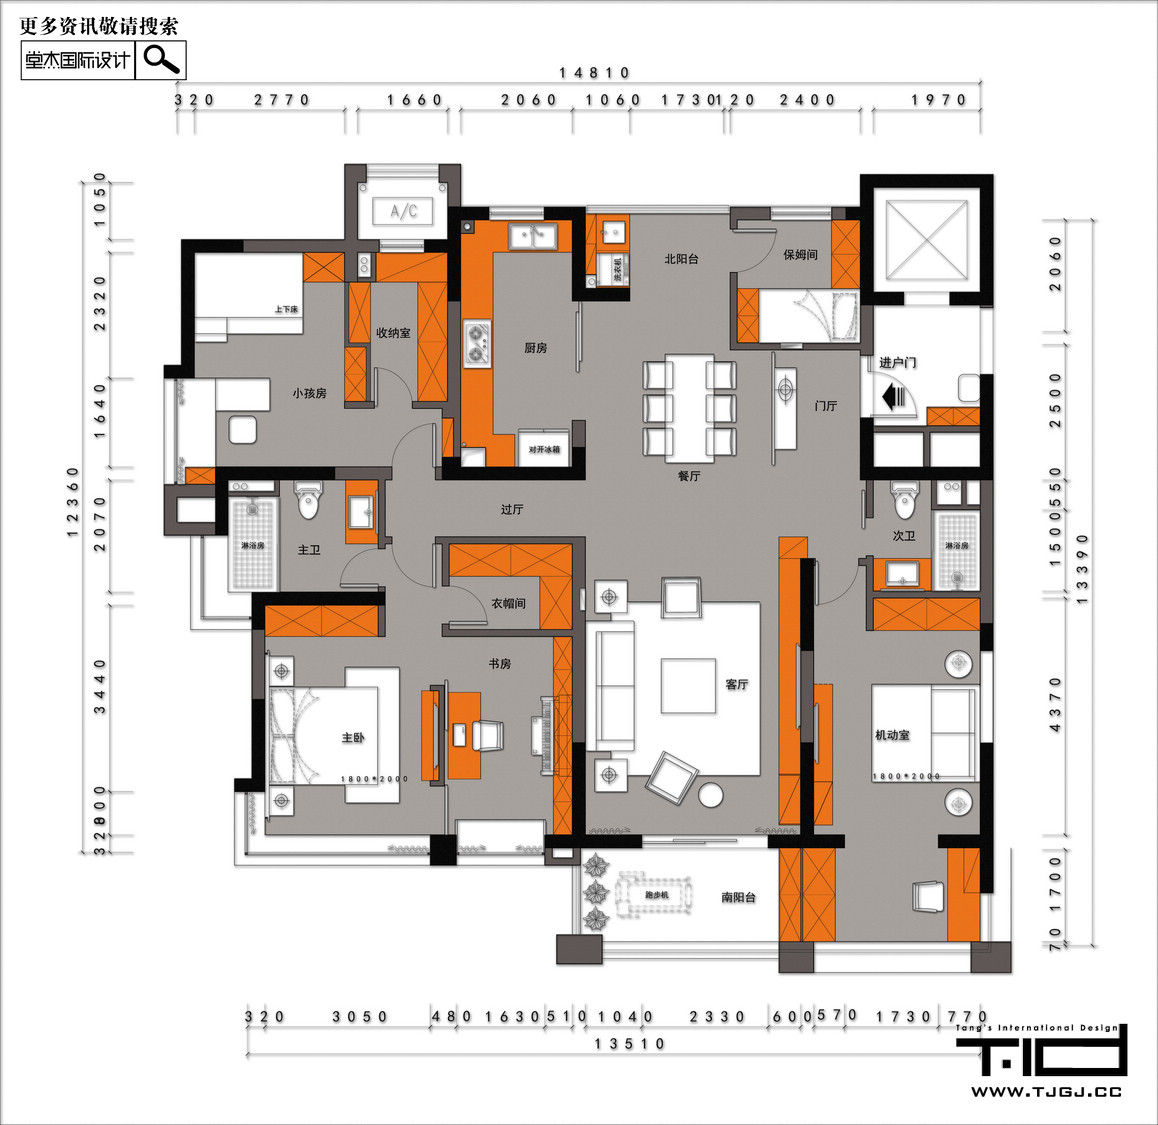 現代簡約-羅托魯拉小鎮-四室兩廳-165㎡裝修-四室兩廳-現代簡約